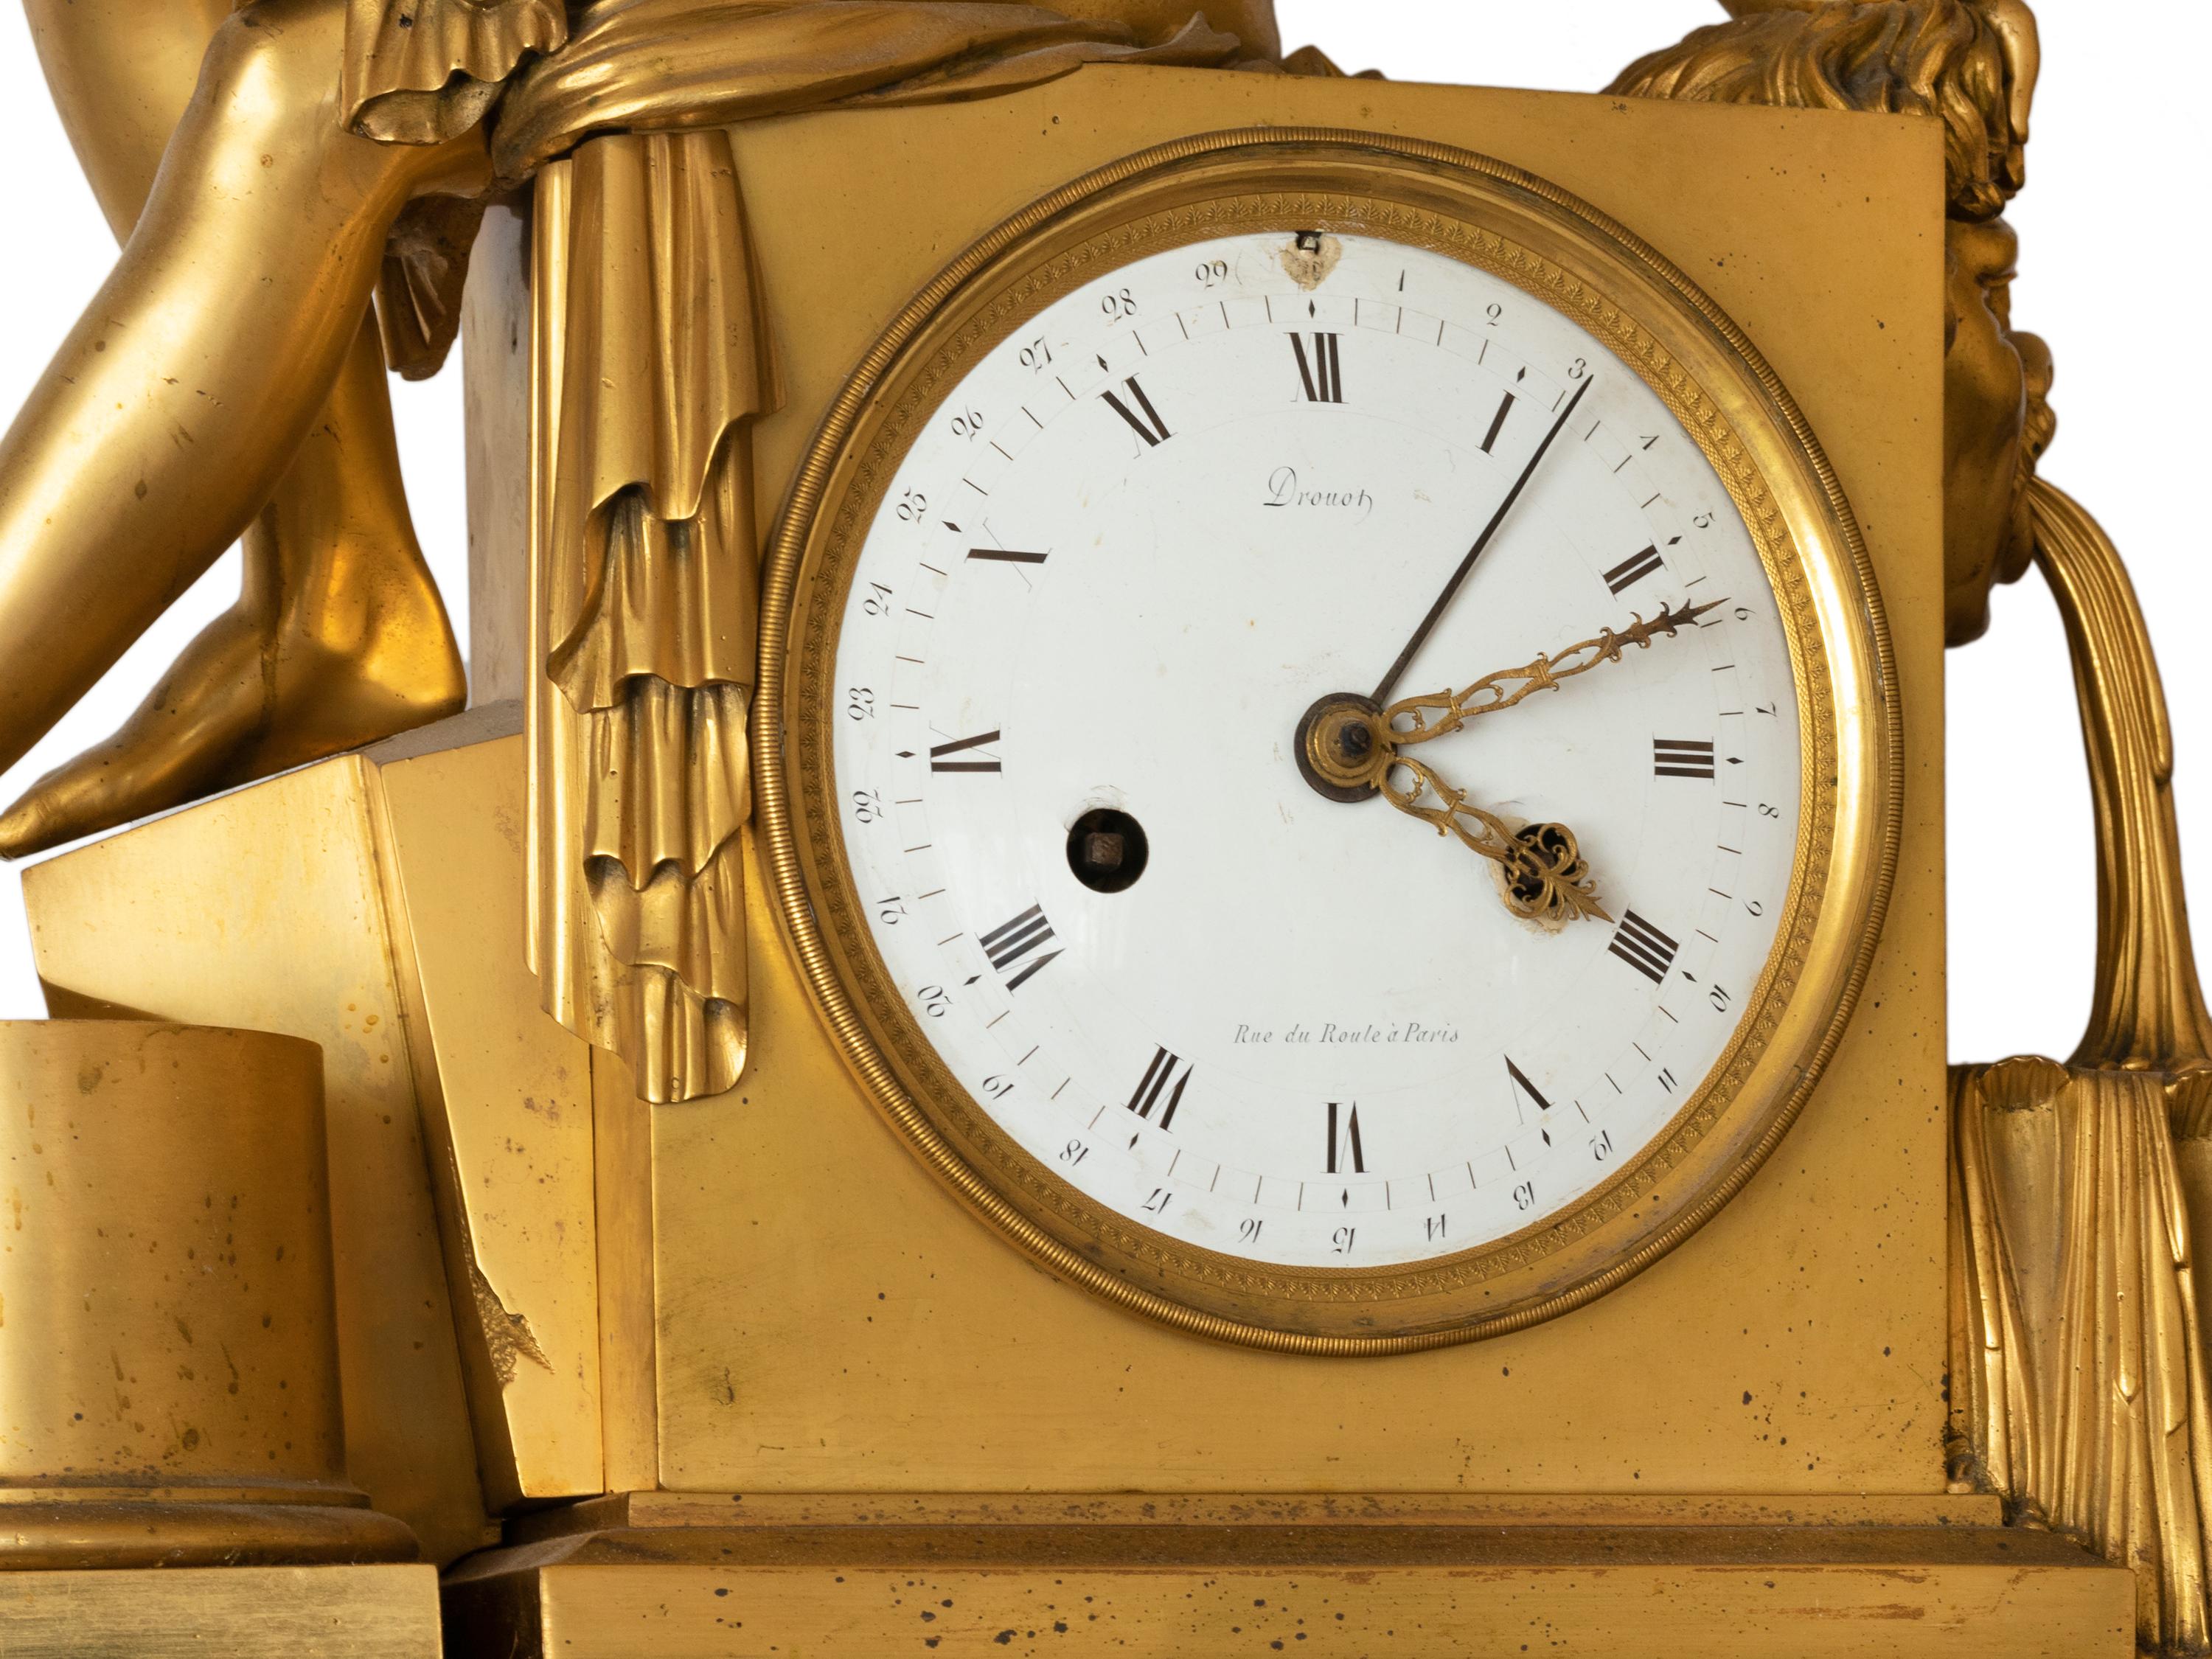  Reloj de sobremesa Imperio Drouot de bronce, S. XIX Francés en venta